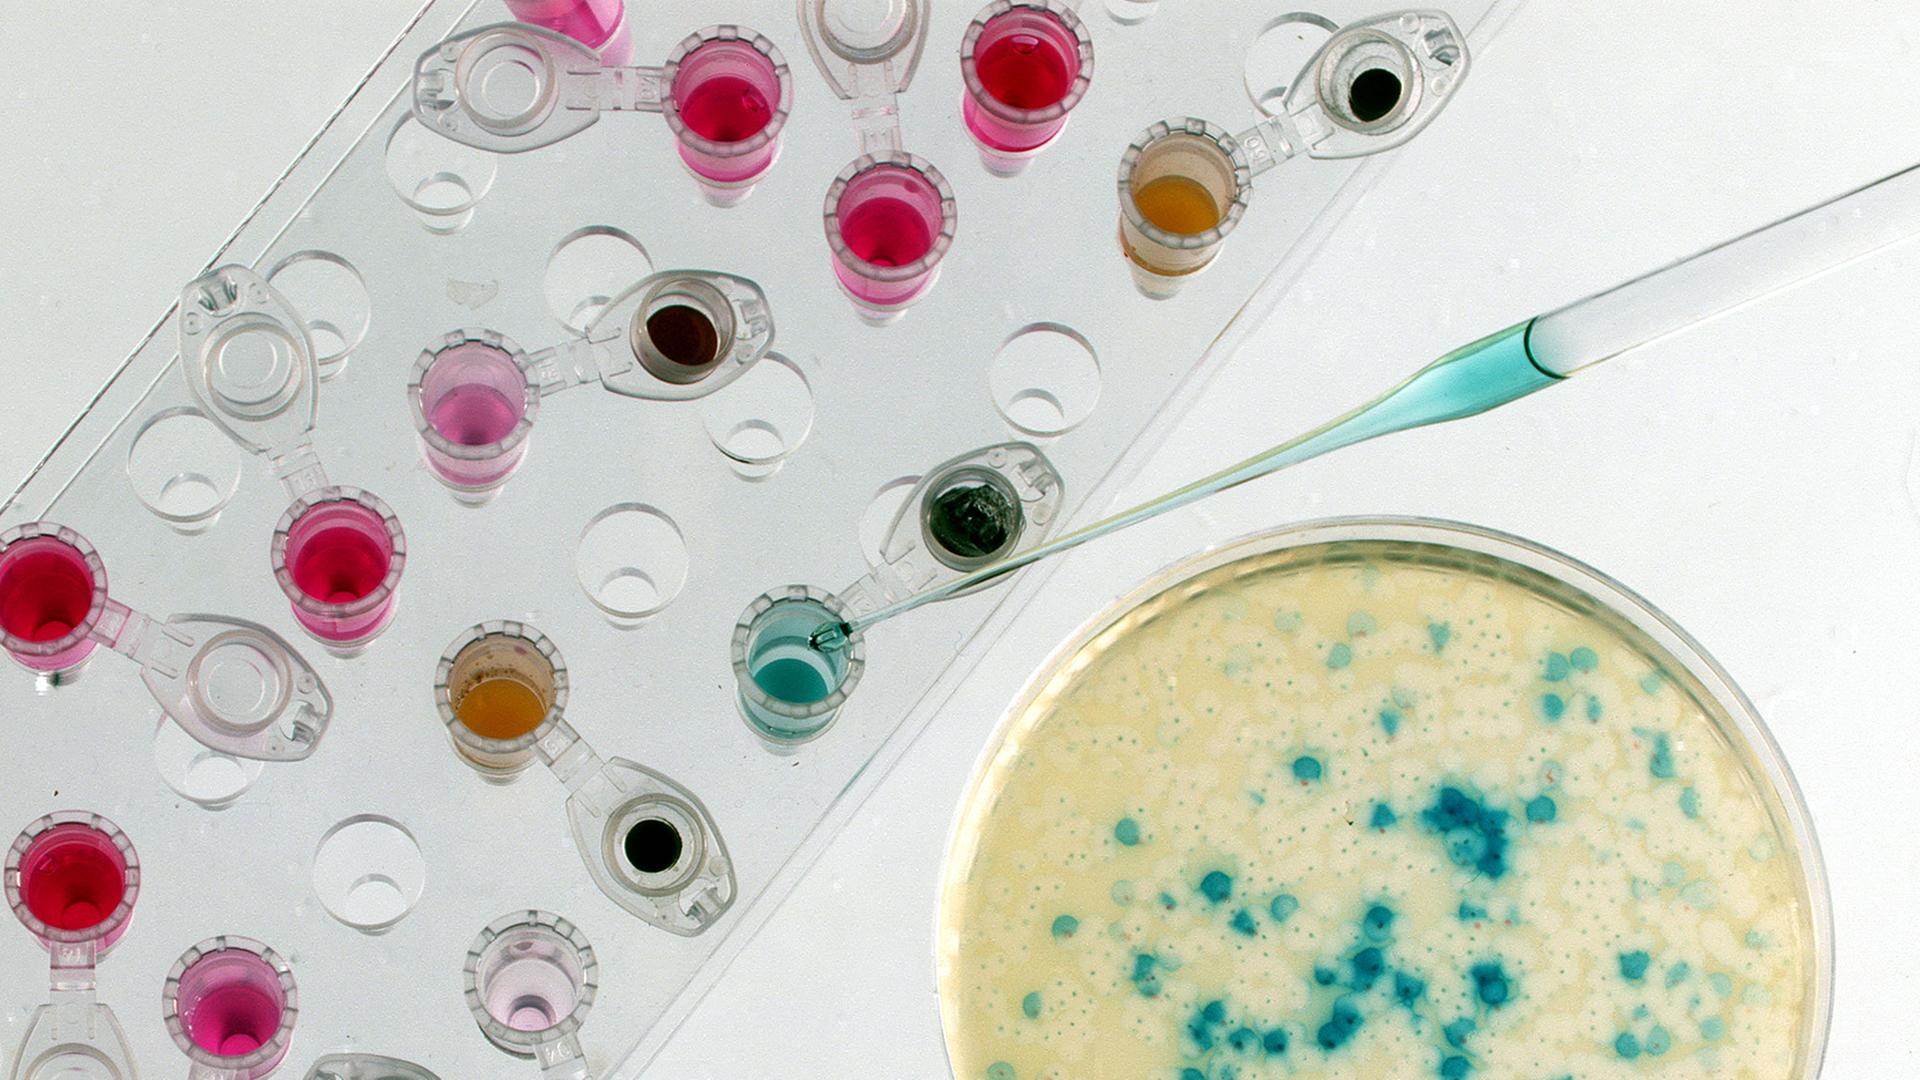 Eine Petrischale mit Bakterienkulturen zur Genvermehrung und Reaktionsgefäße mit Enzym- und Salzlösungen für gentechnische Arbeiten